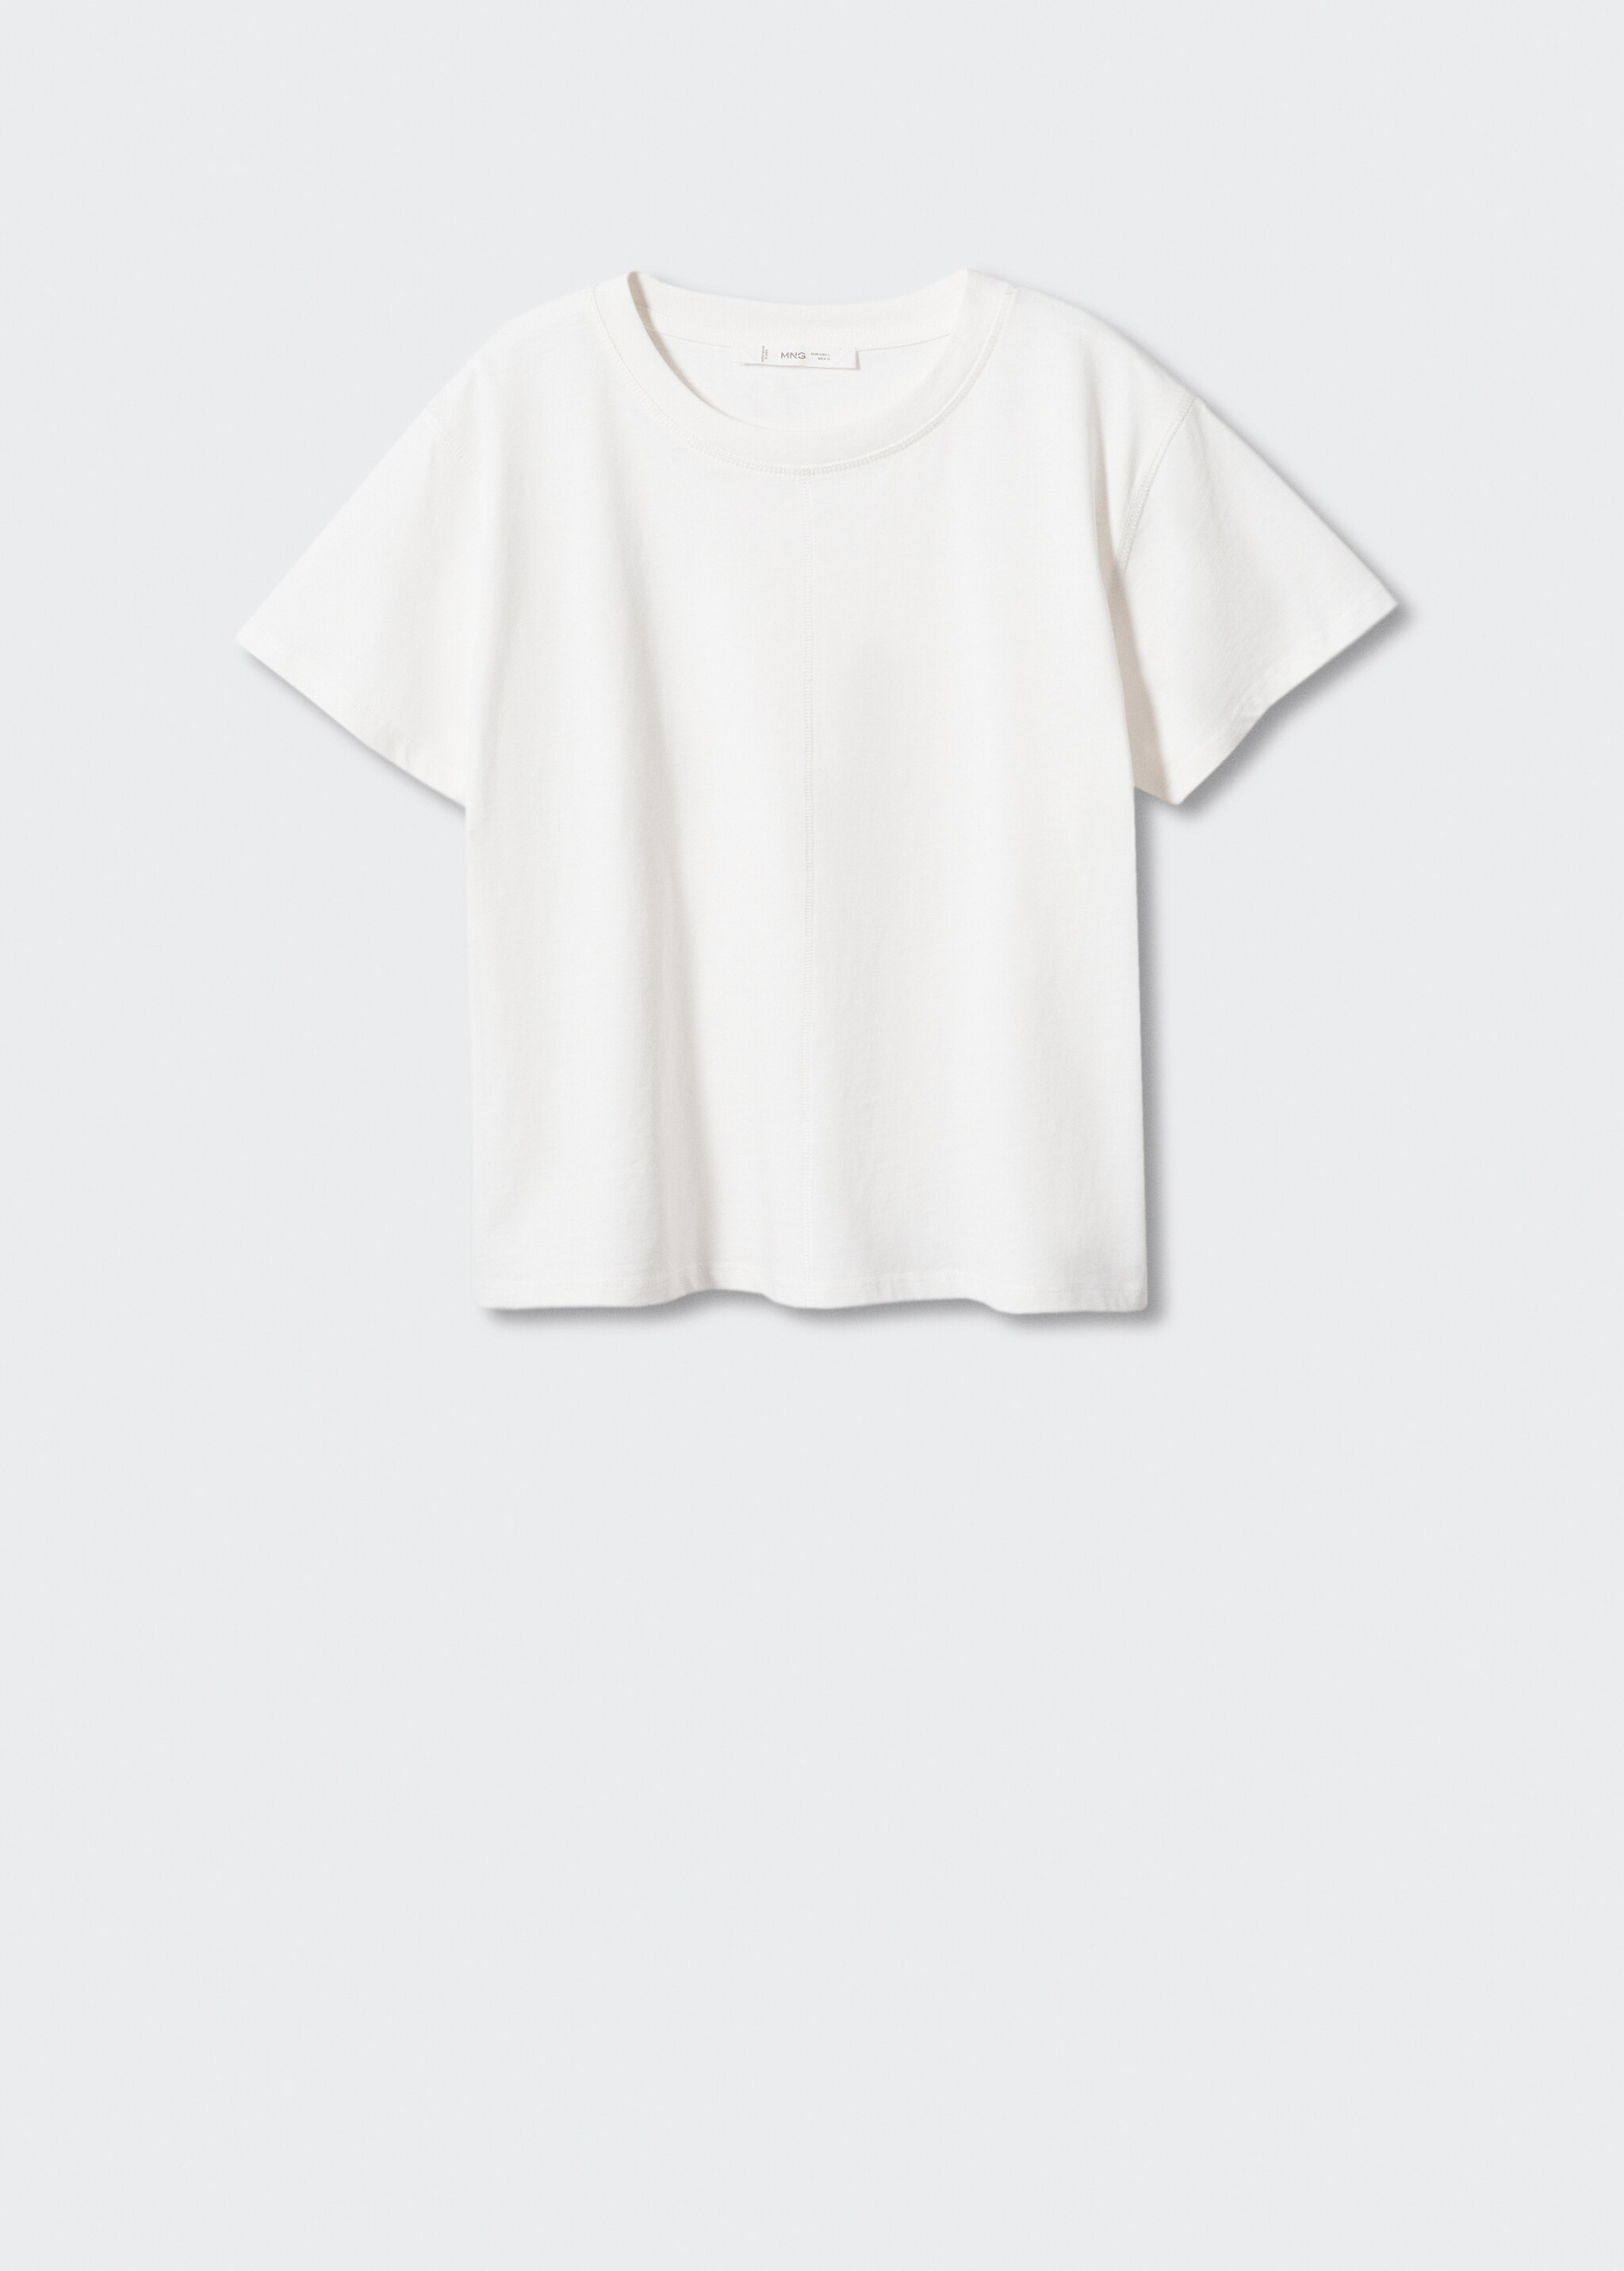 Camiseta algodón costura - Artículo sin modelo